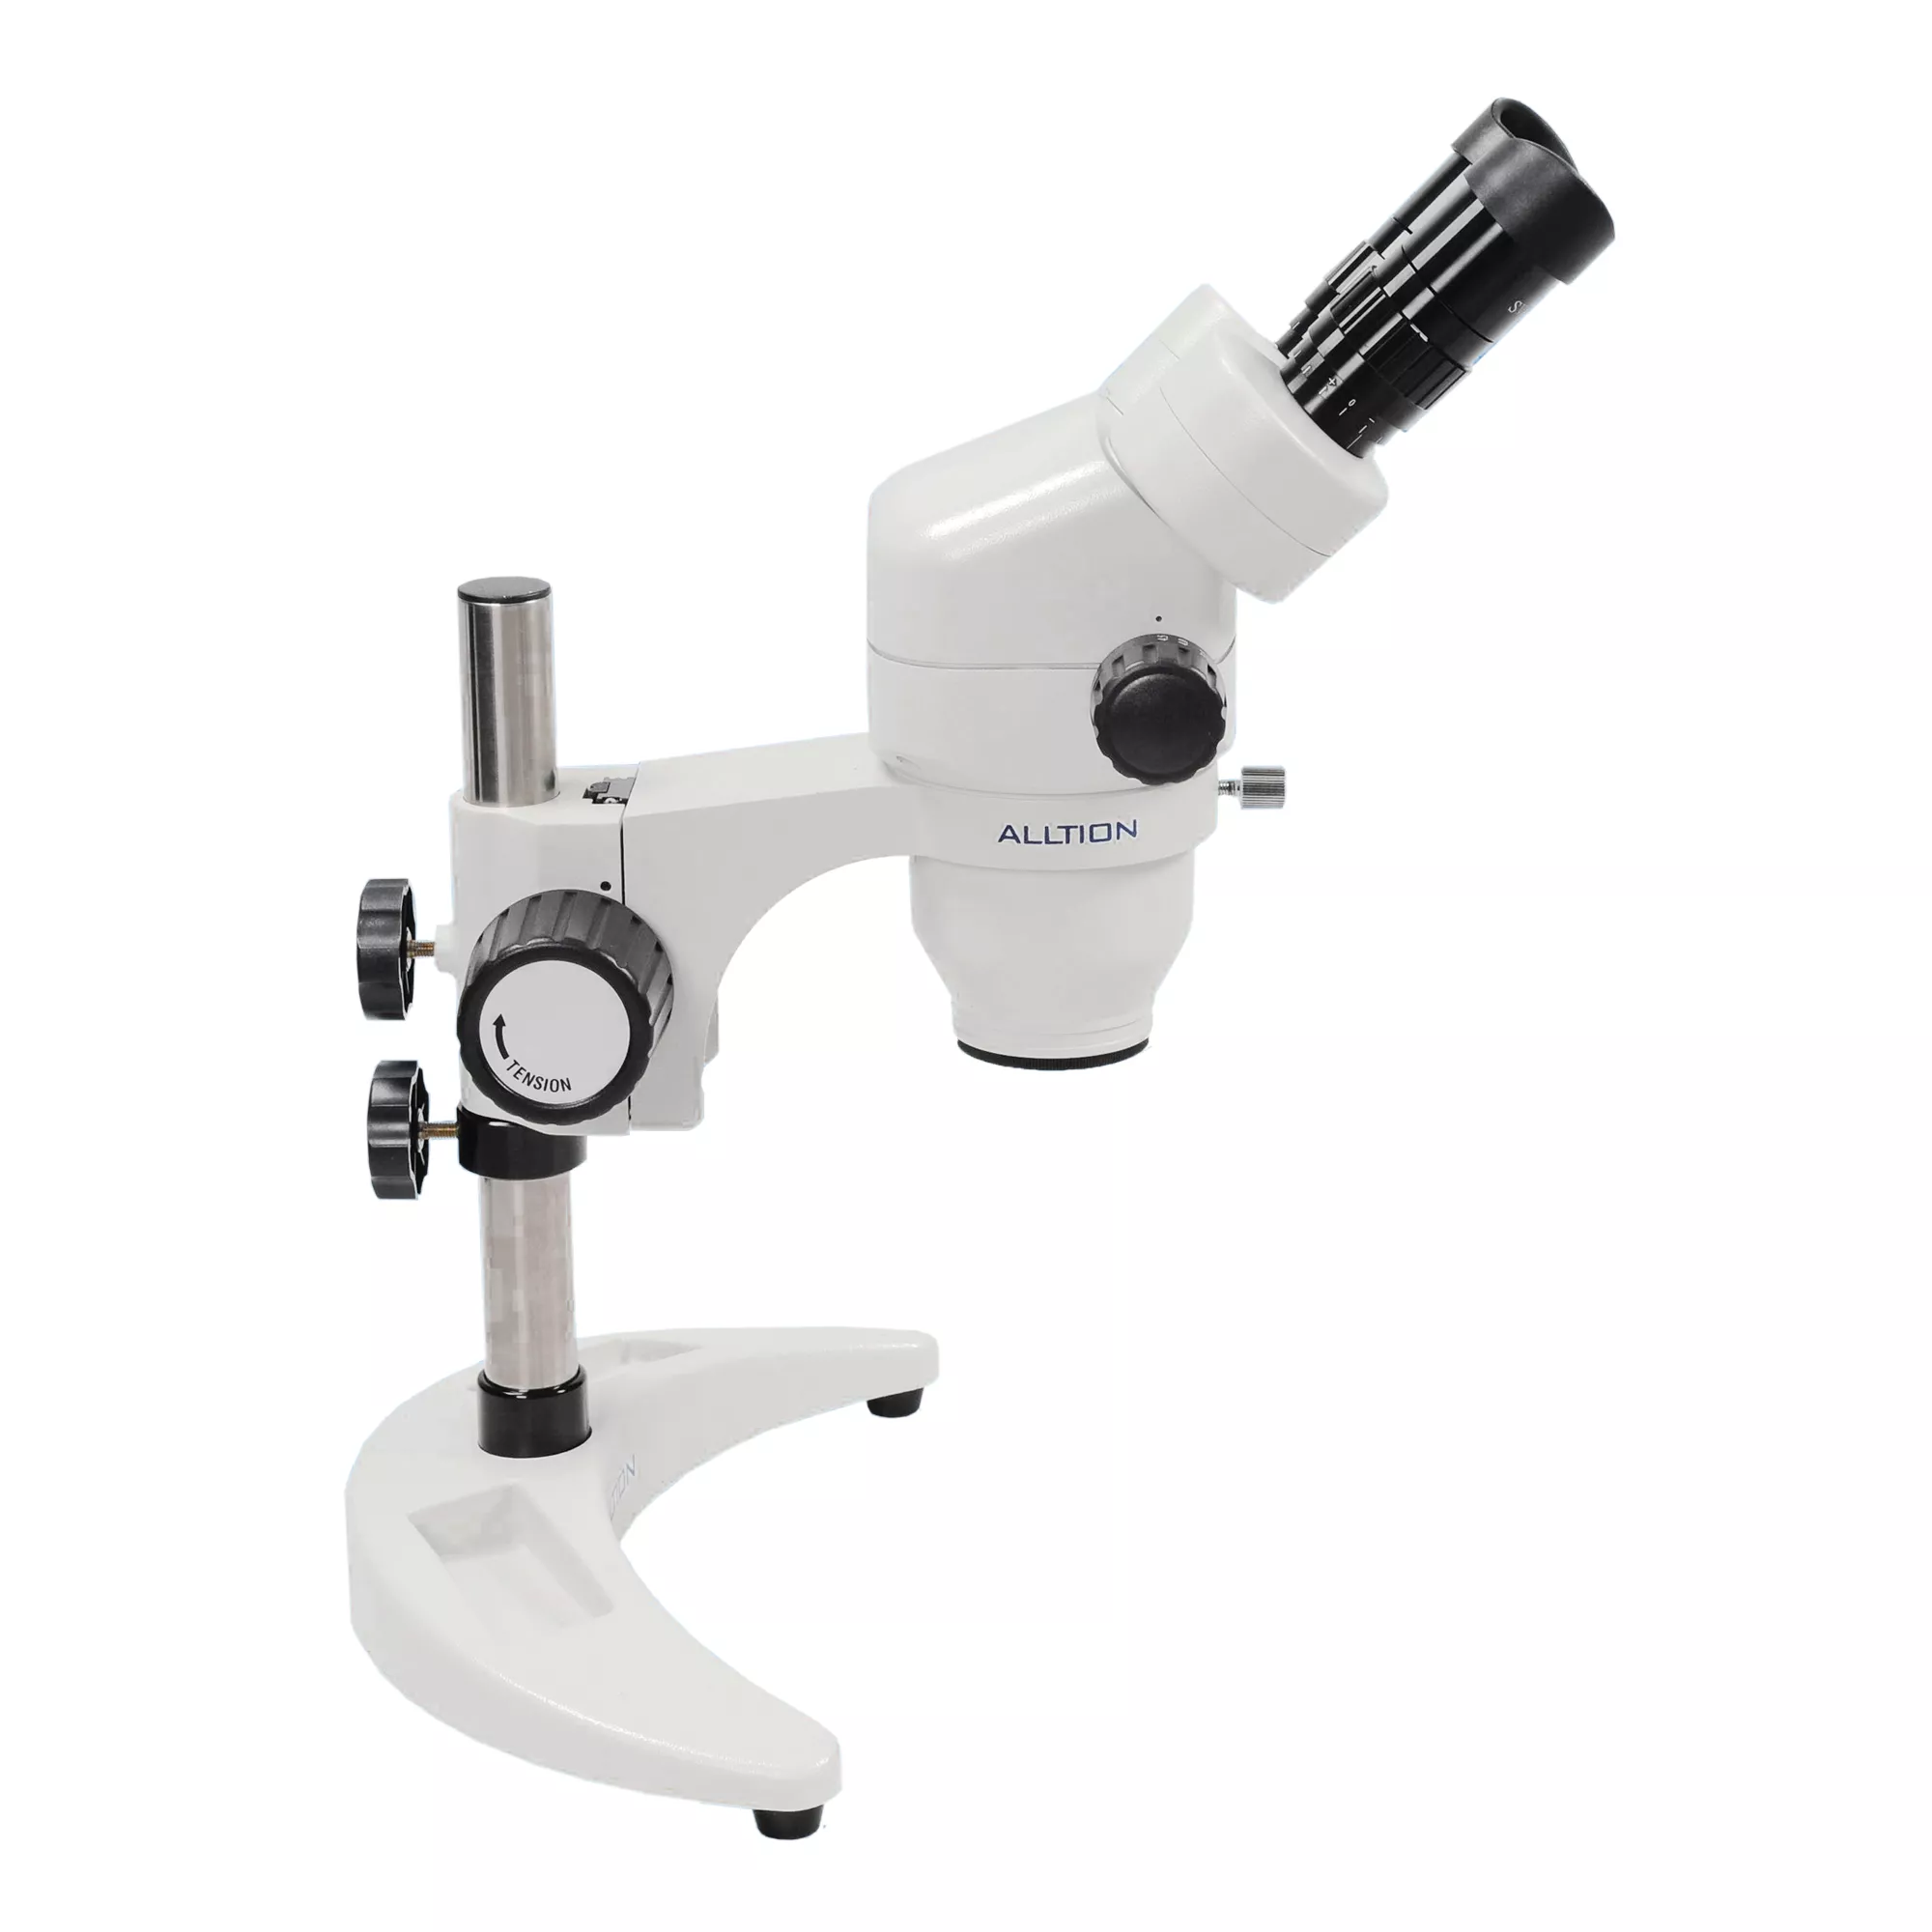 ALLTION ASM-0745BC  бинокулярный зуботехнический стереомикроскоп с плавным увеличением 7x-45x, на мобильной подставке